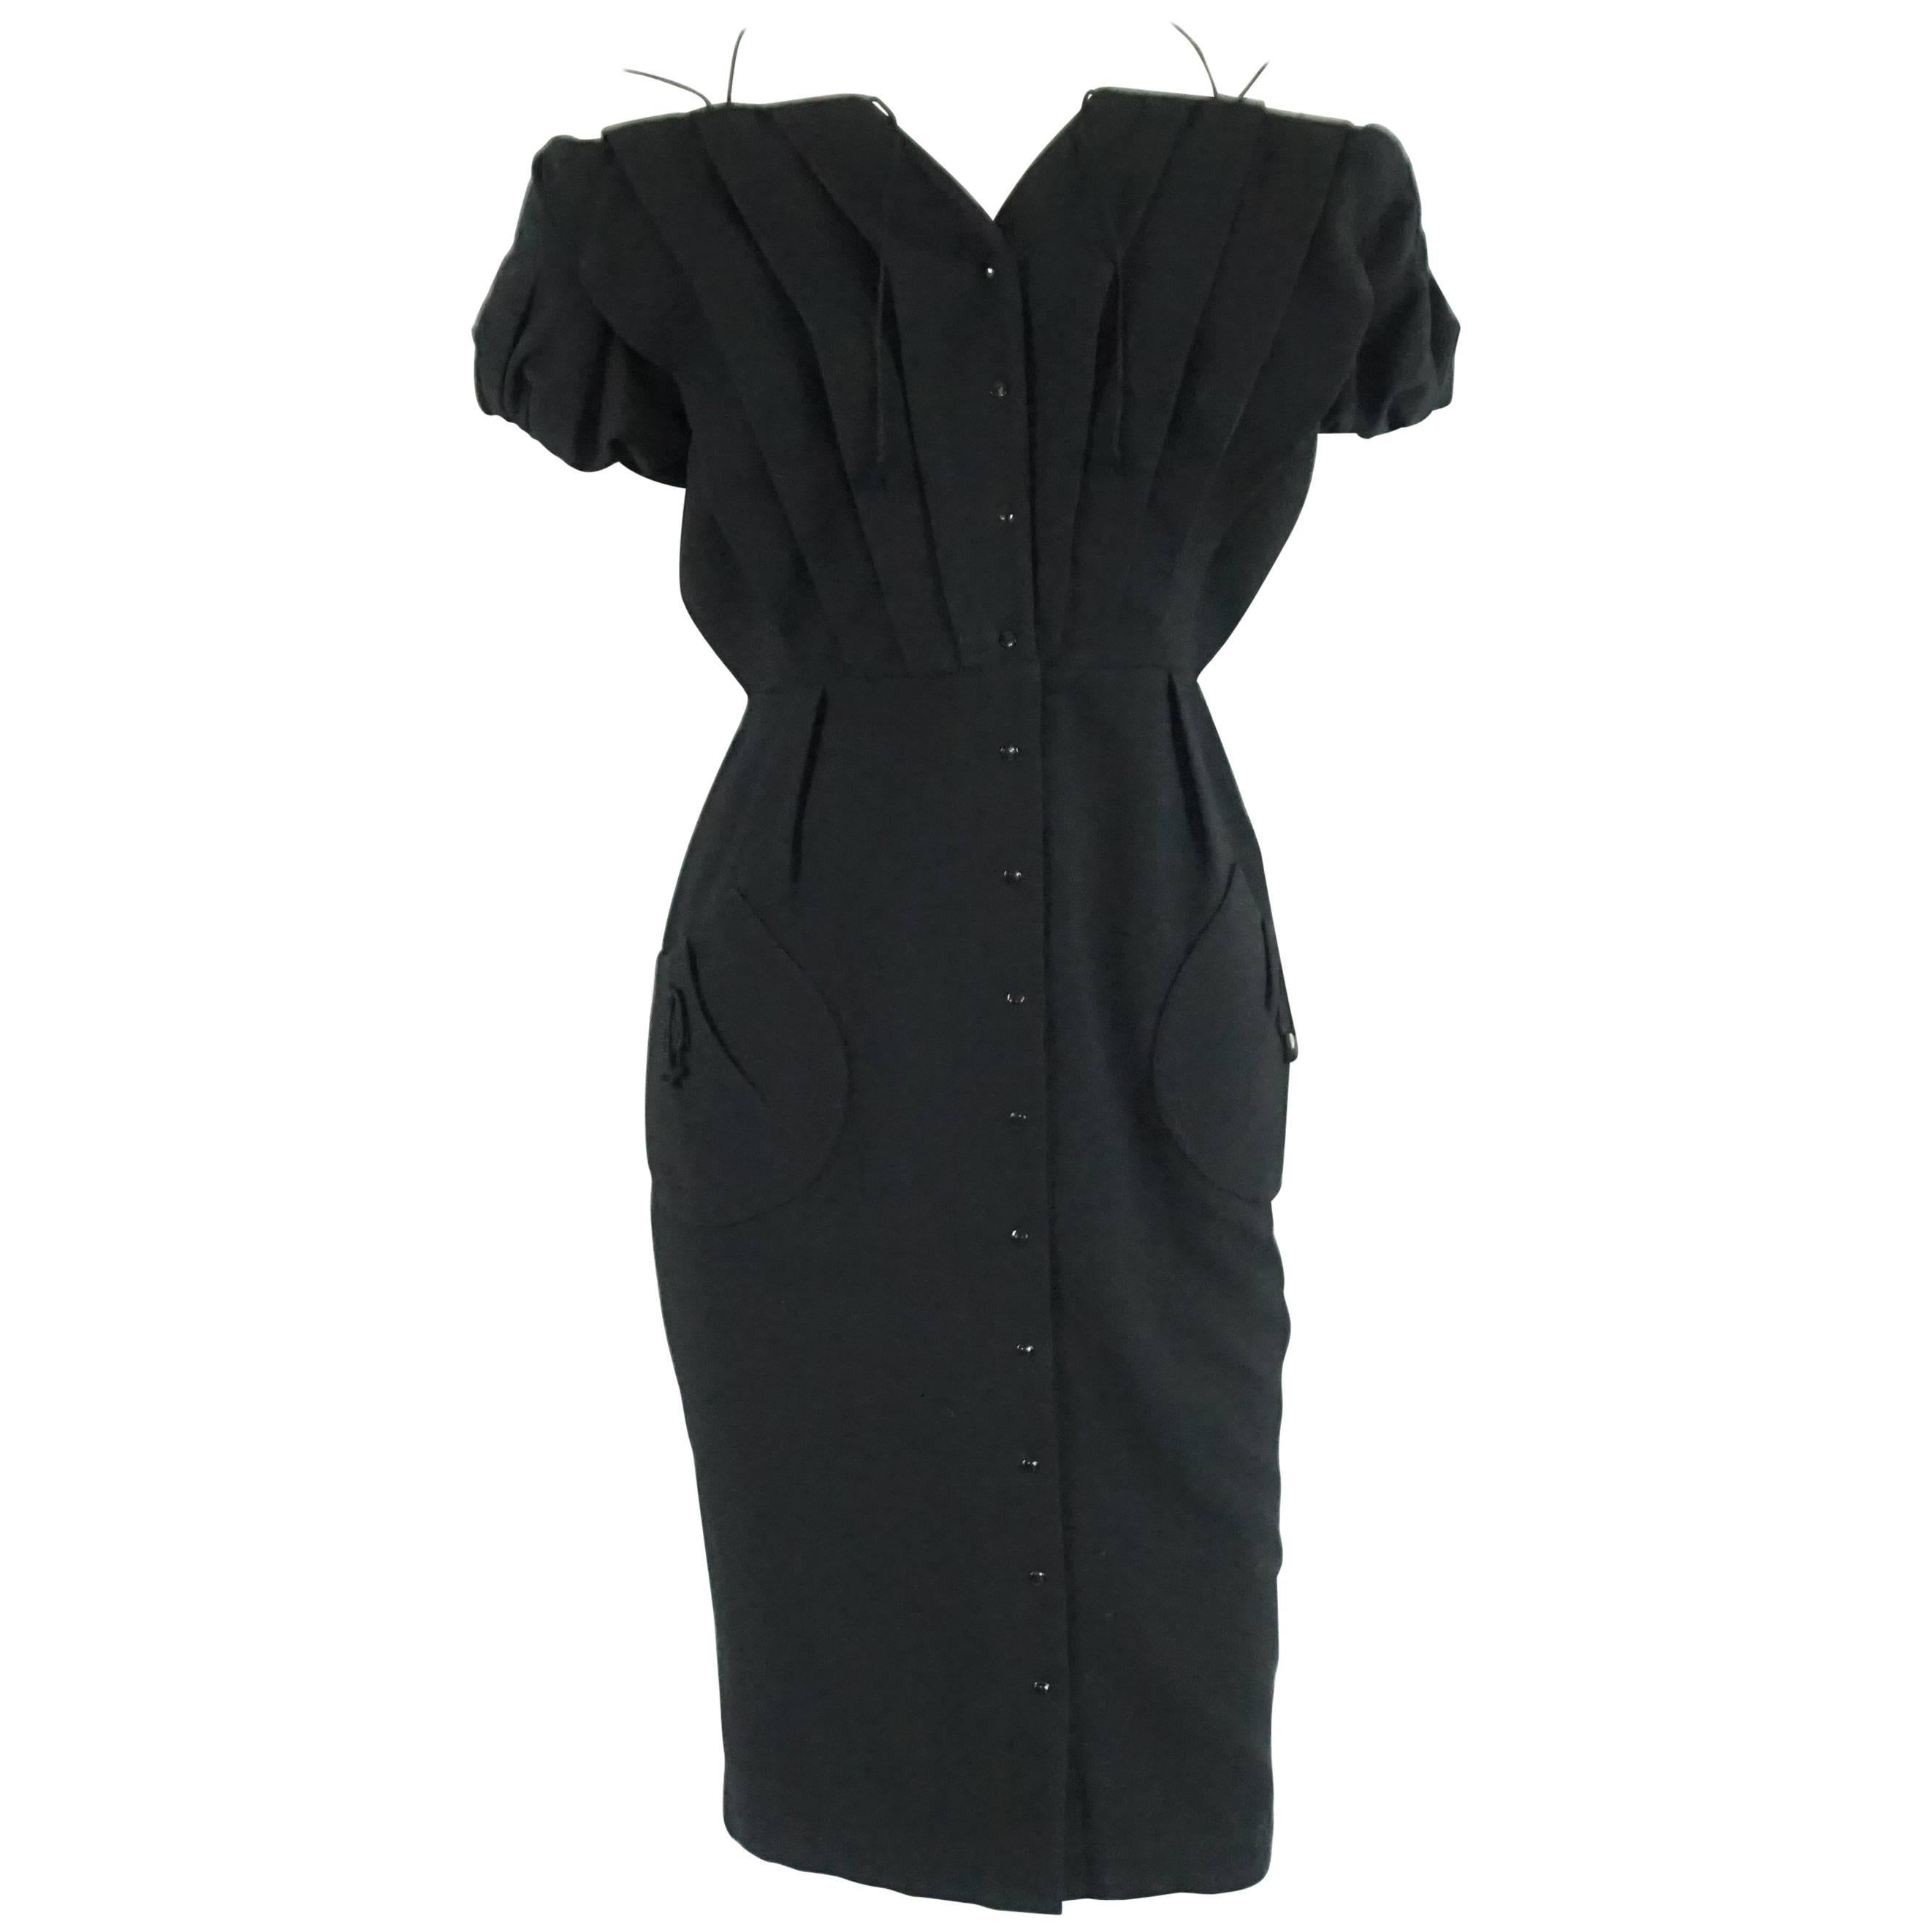 Thierry Mugler Black Pique Dress - 40 - Circa 90's